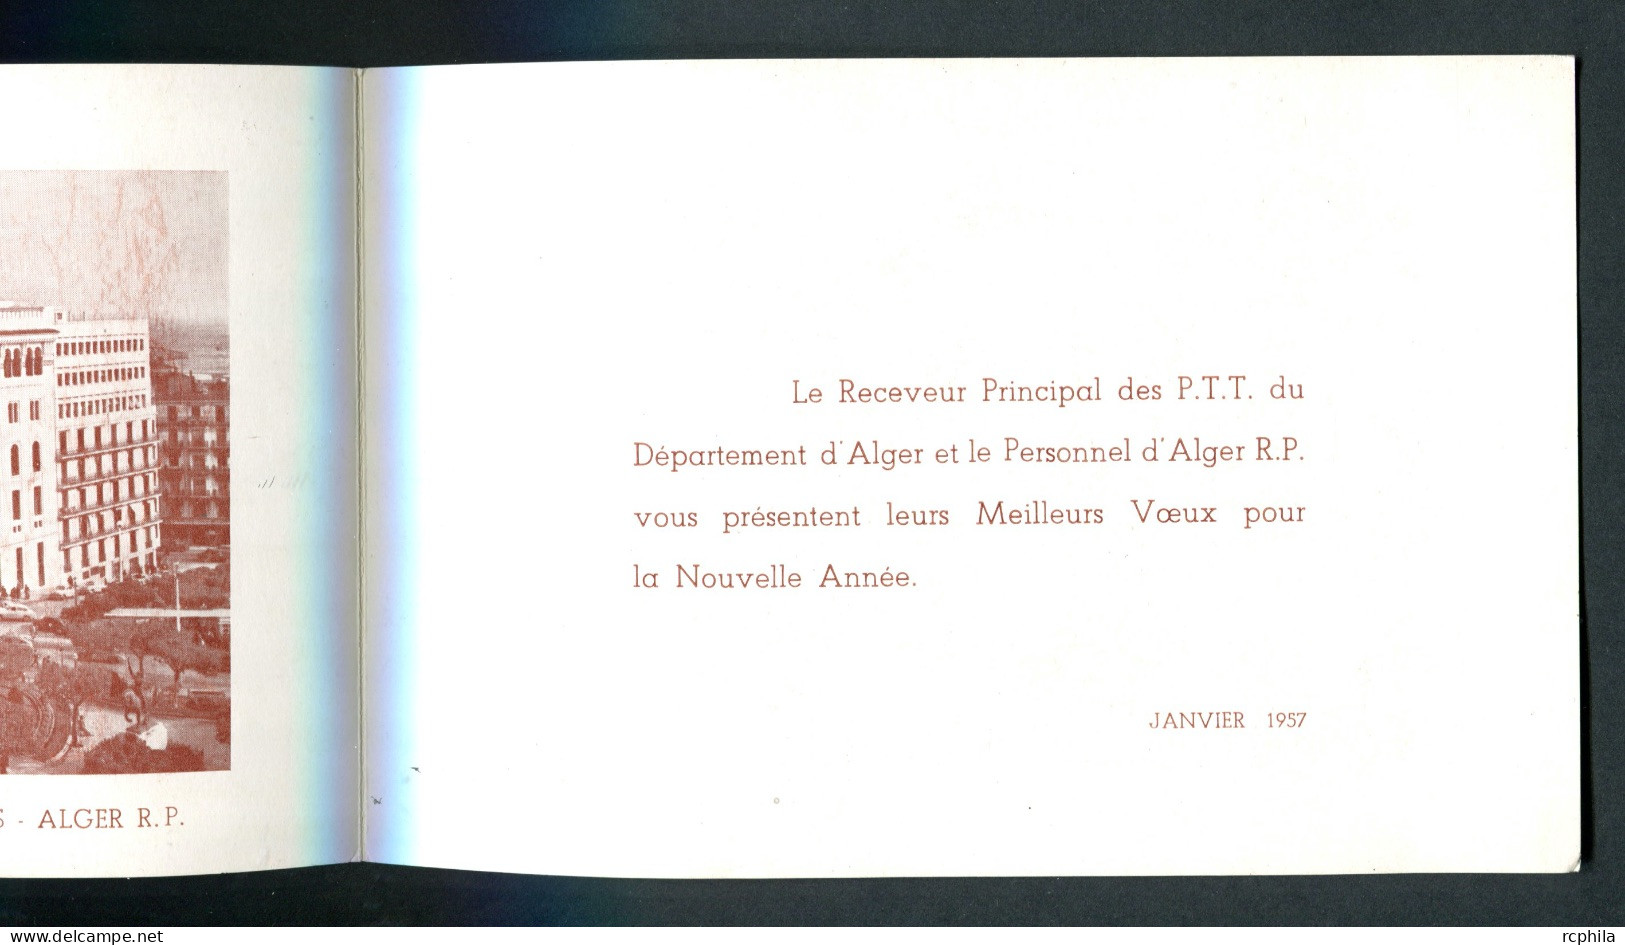 RC 25577 ALGERIE 1957 MEILLEURS VOEUX DU RECEVEUR DES P.T.T. DU DEPARTEMENT D' ALGER DÉPLIANT 18cm X 12cm - Maximumkarten